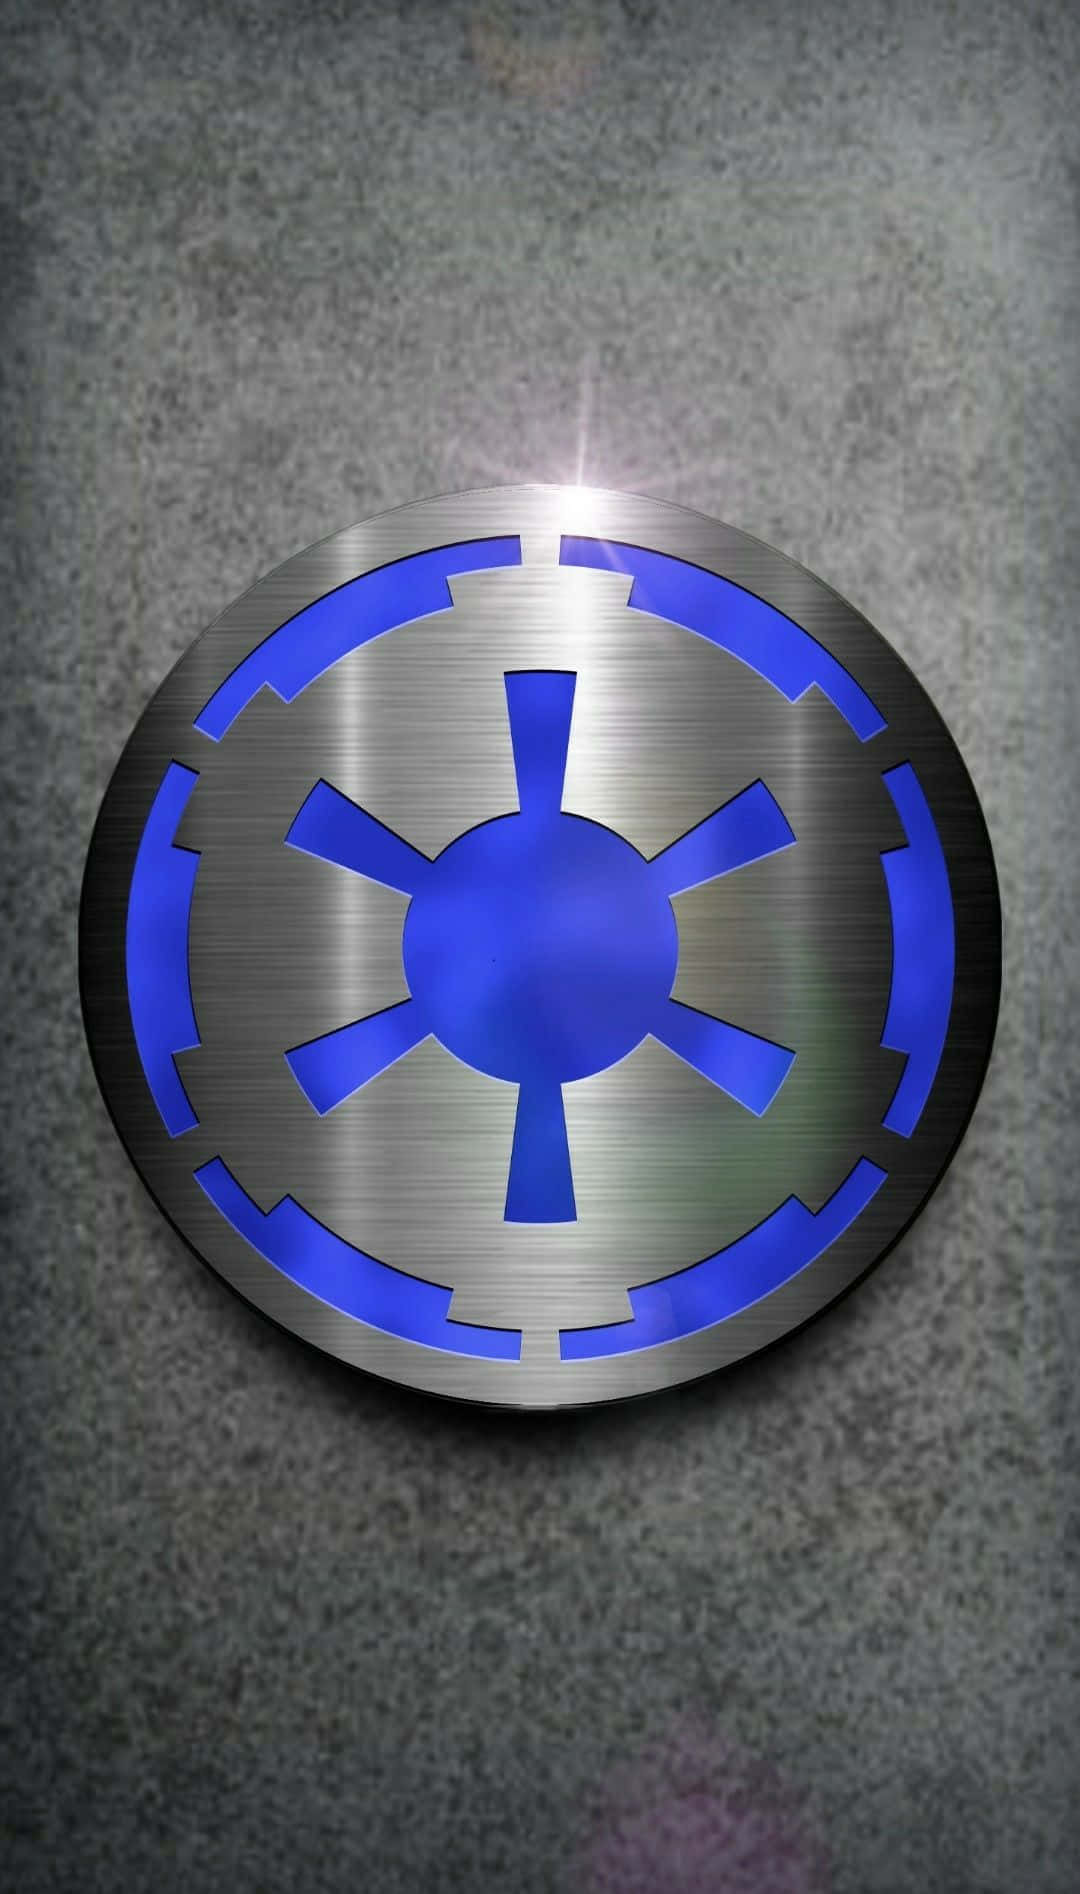 Dasikonische Star Wars Imperium Logo Wallpaper